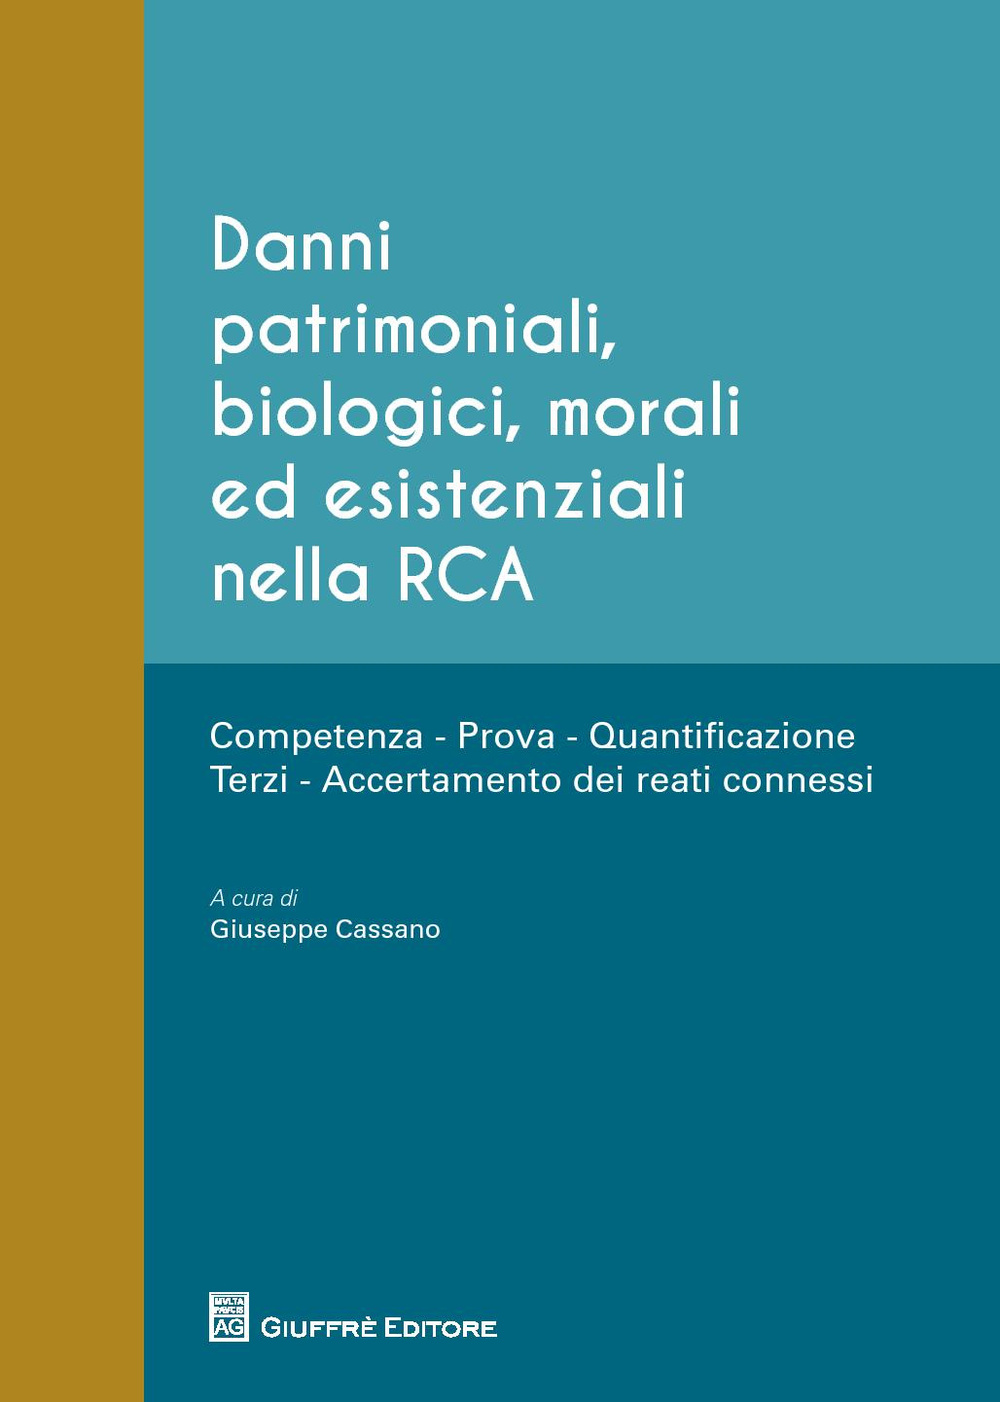 Danni patrimoniali, biologici, morali ed esistenziali nella RCA. Competenza, prova, quantificazione, terzi, accertamento dei reati connessi